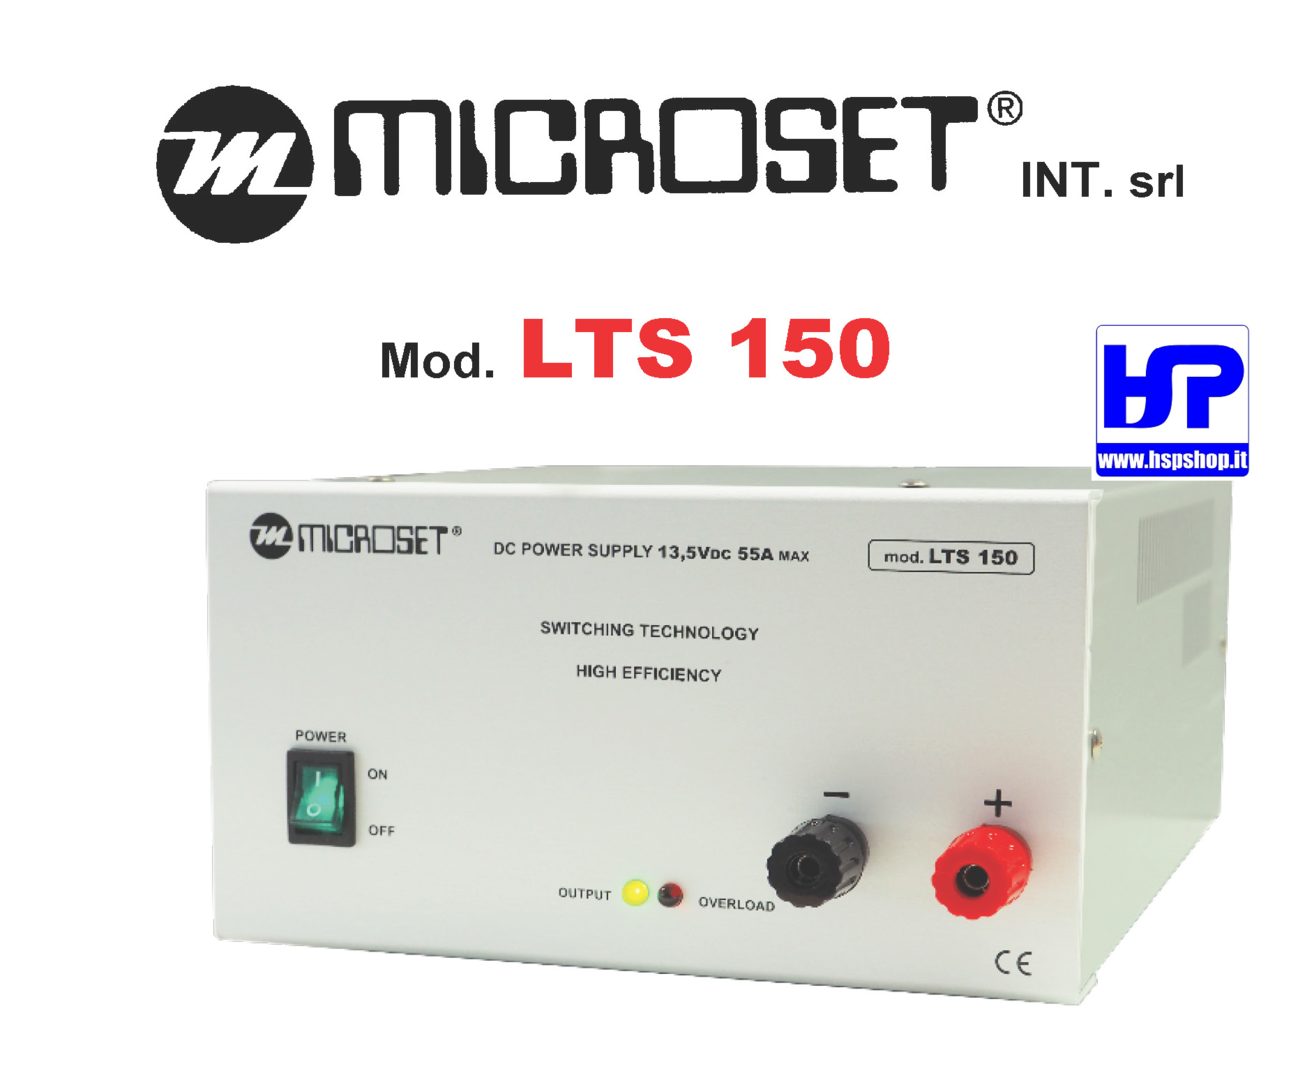 MICROSET - LTS 150 - ALIMENTATORE 13,5V - 55A